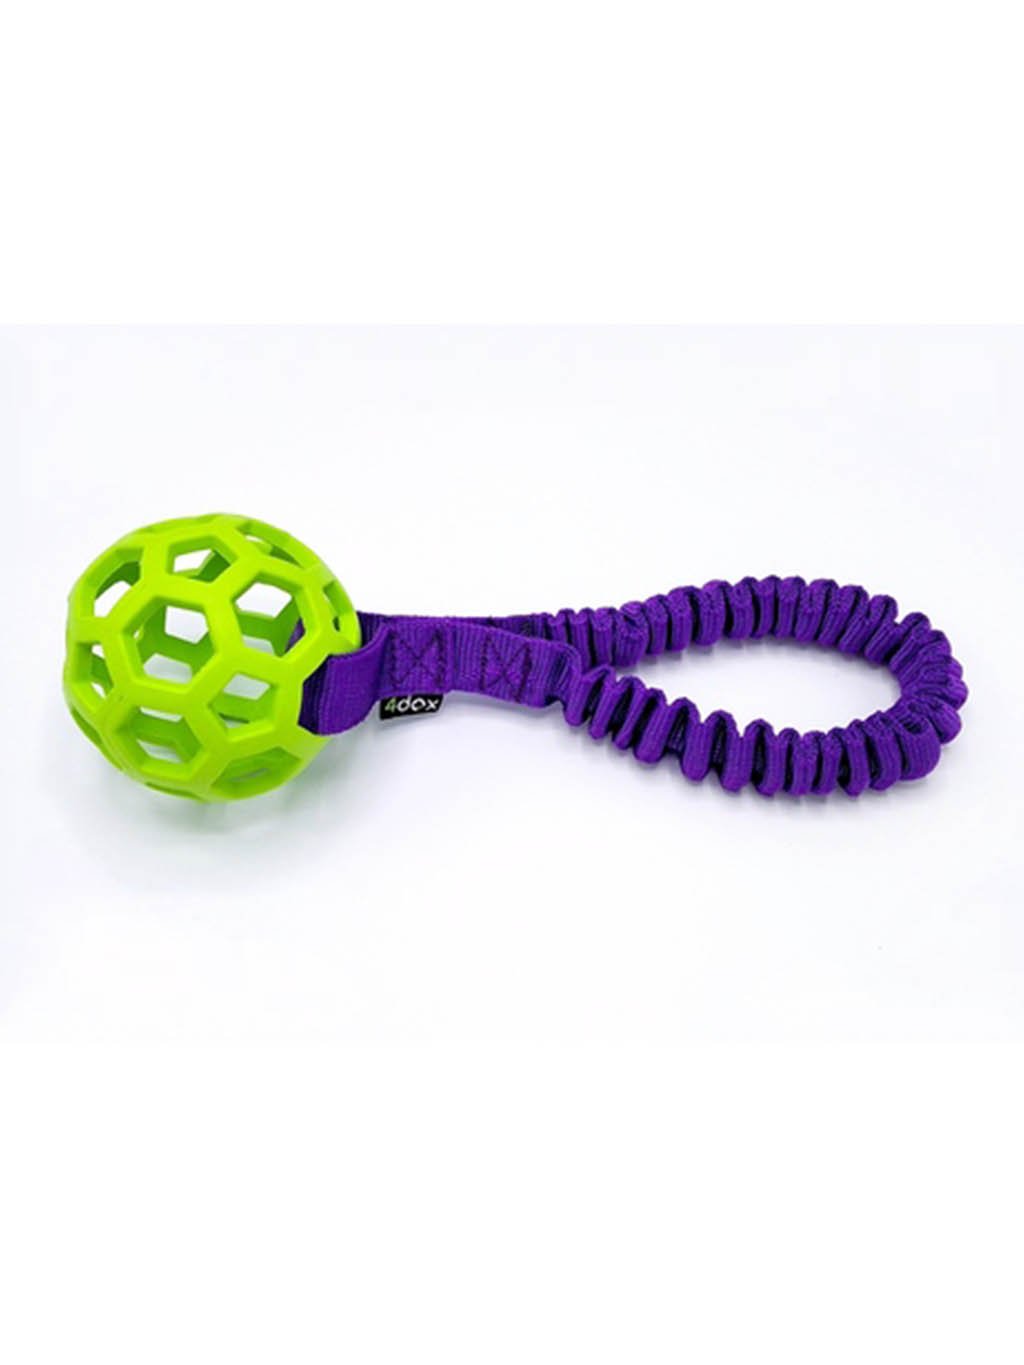 Přetahovadlo - děrovaný míč s amortizérem 8 cm limetka/fialový 4dox